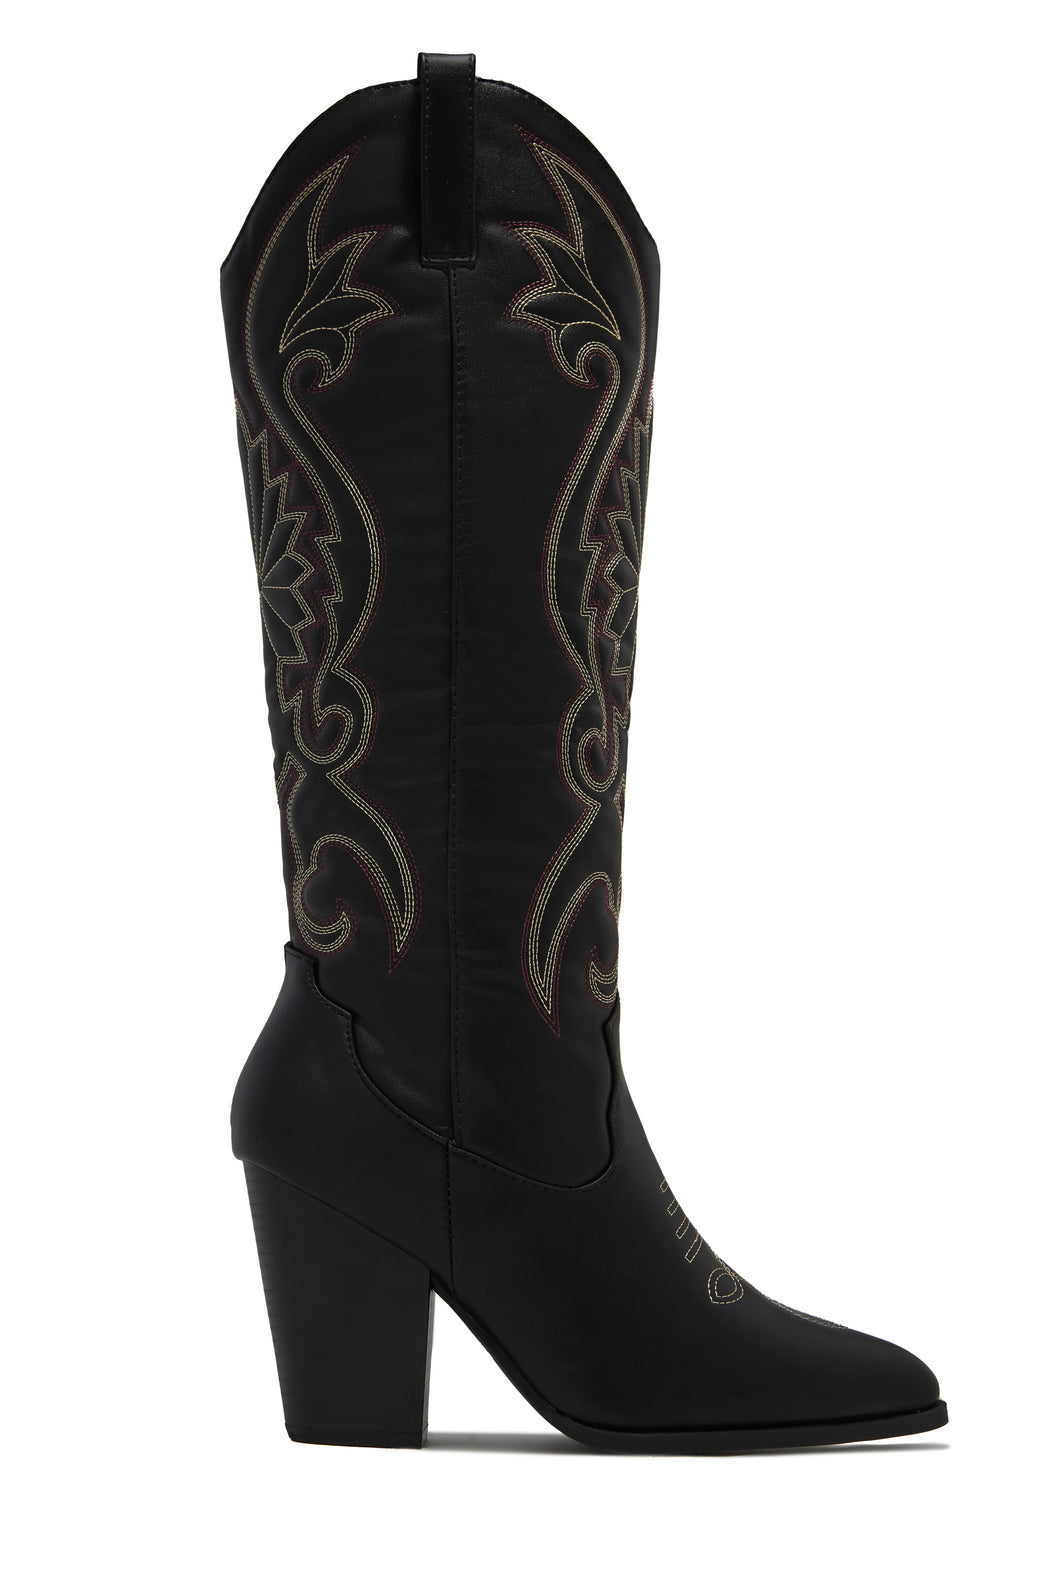 Jordyn Cowgirl Boots - Black